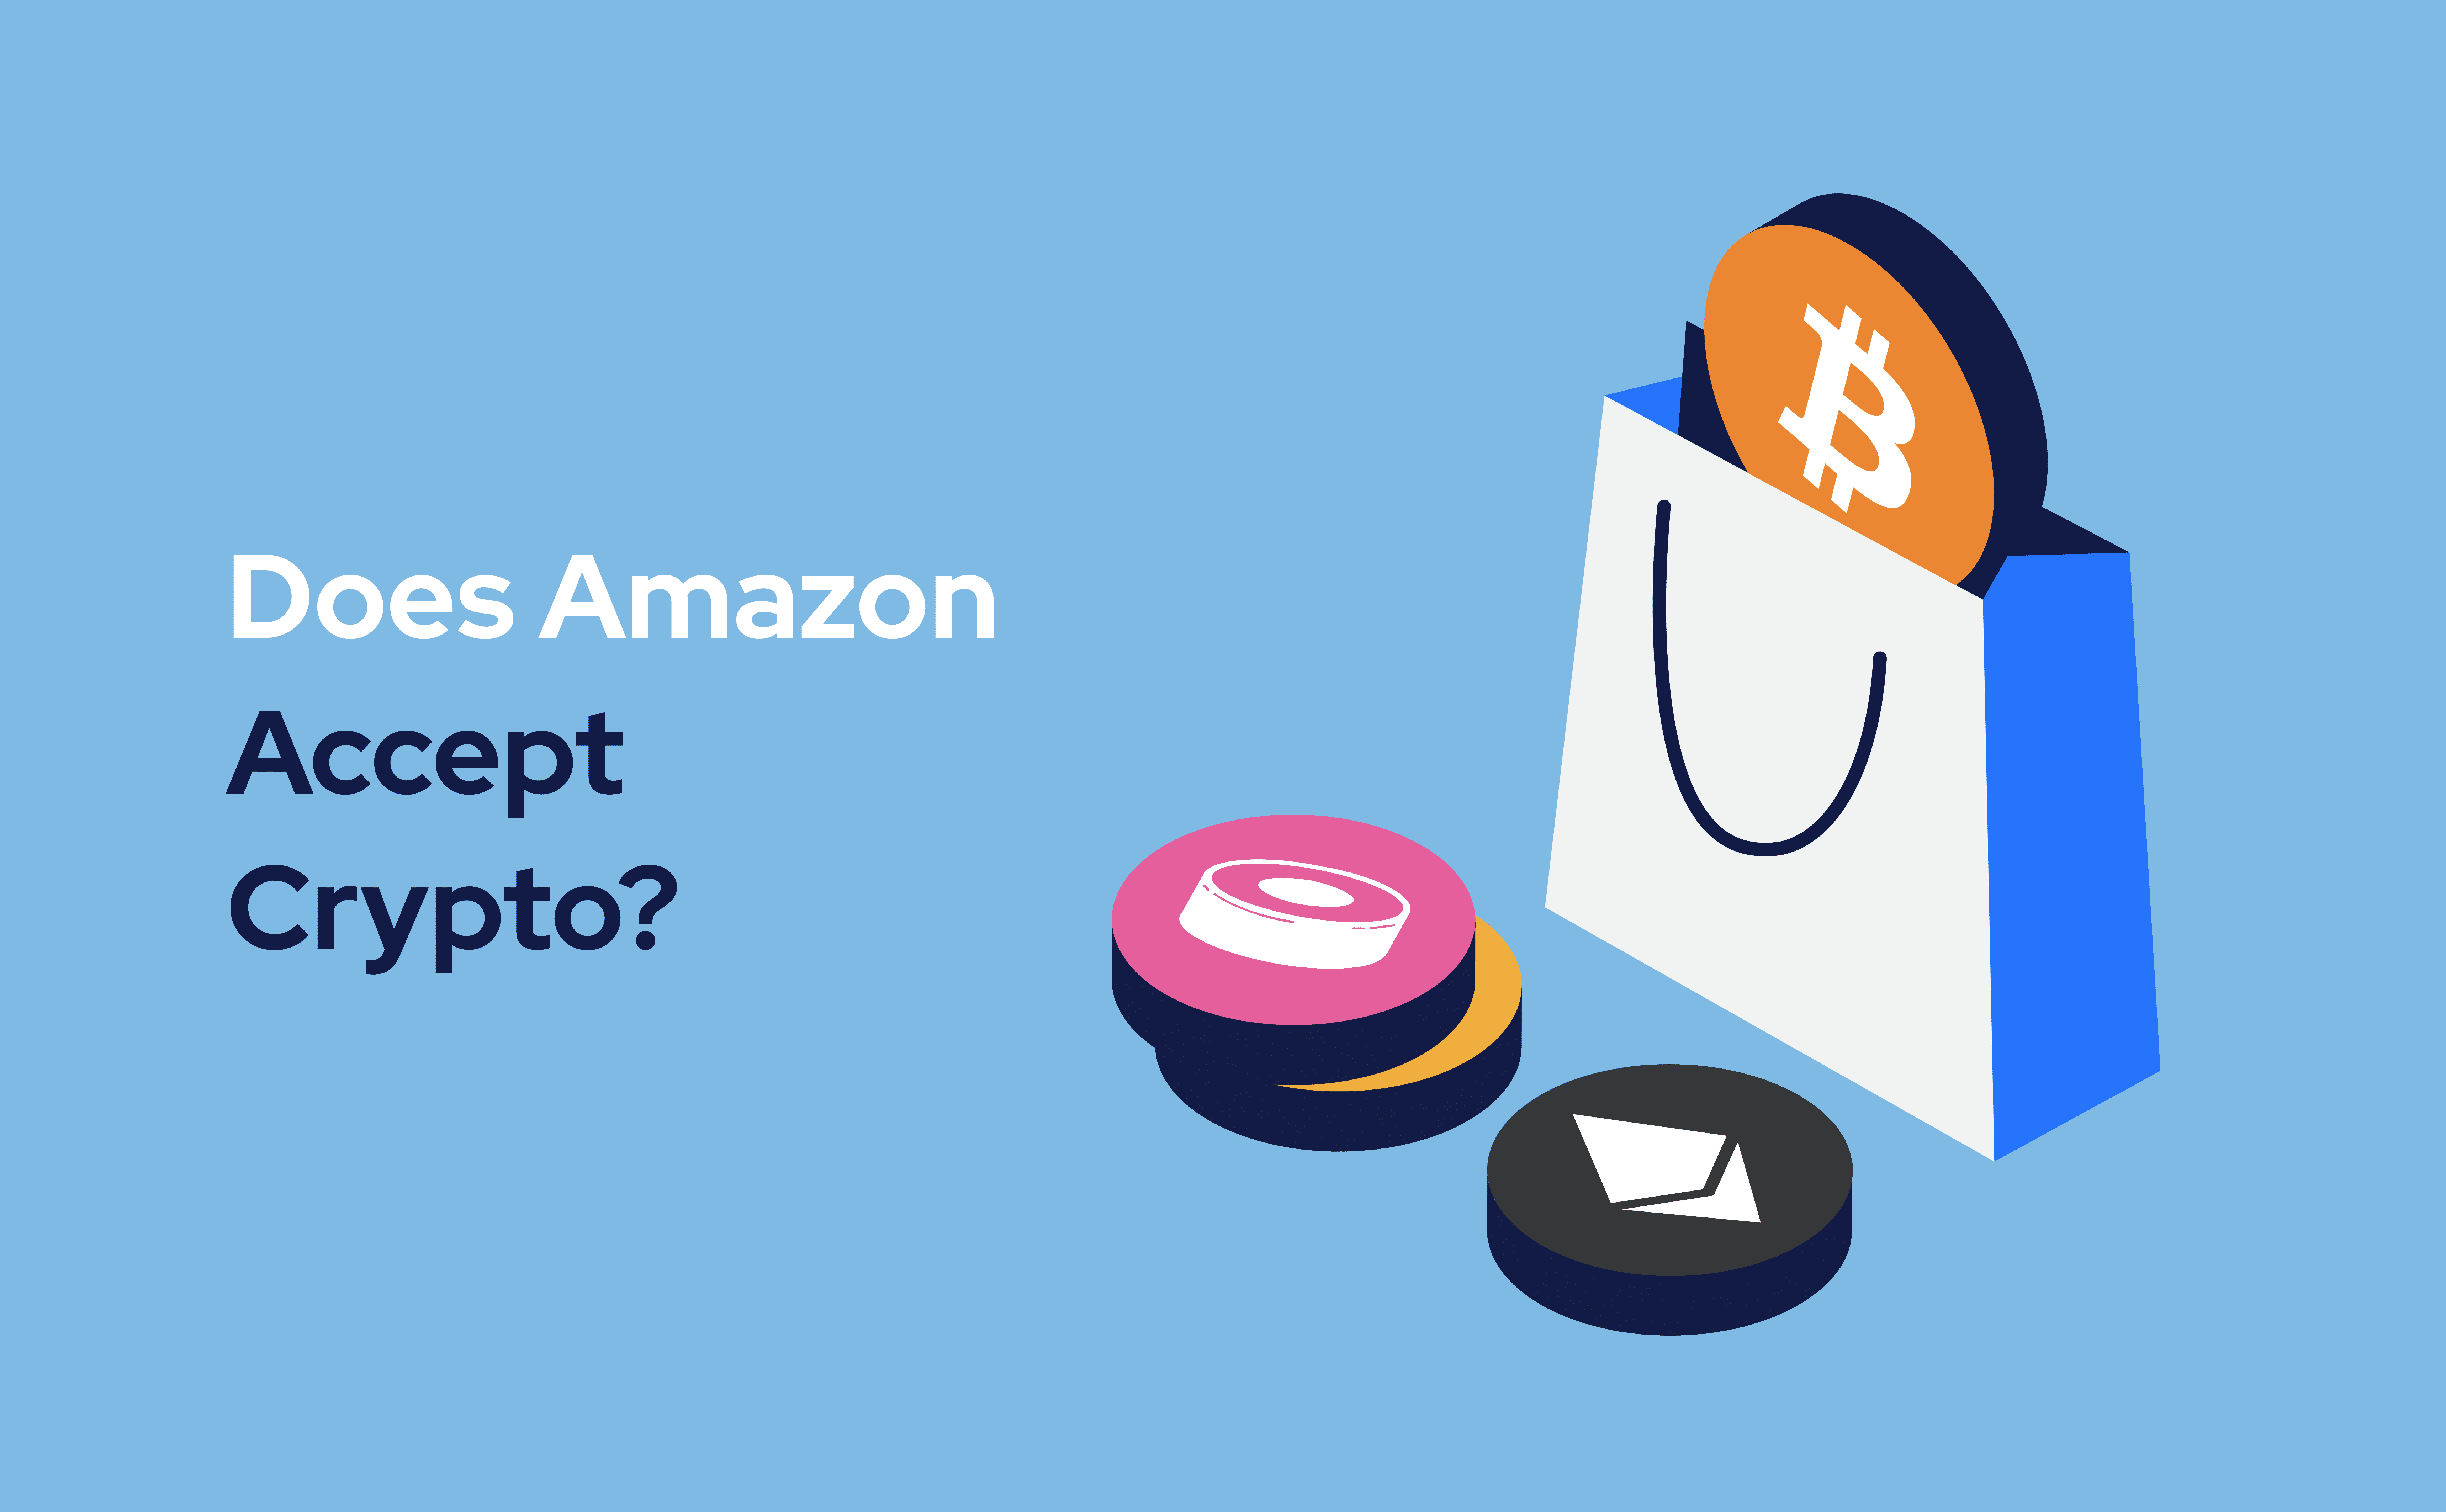 Does Amazon accept crypto?